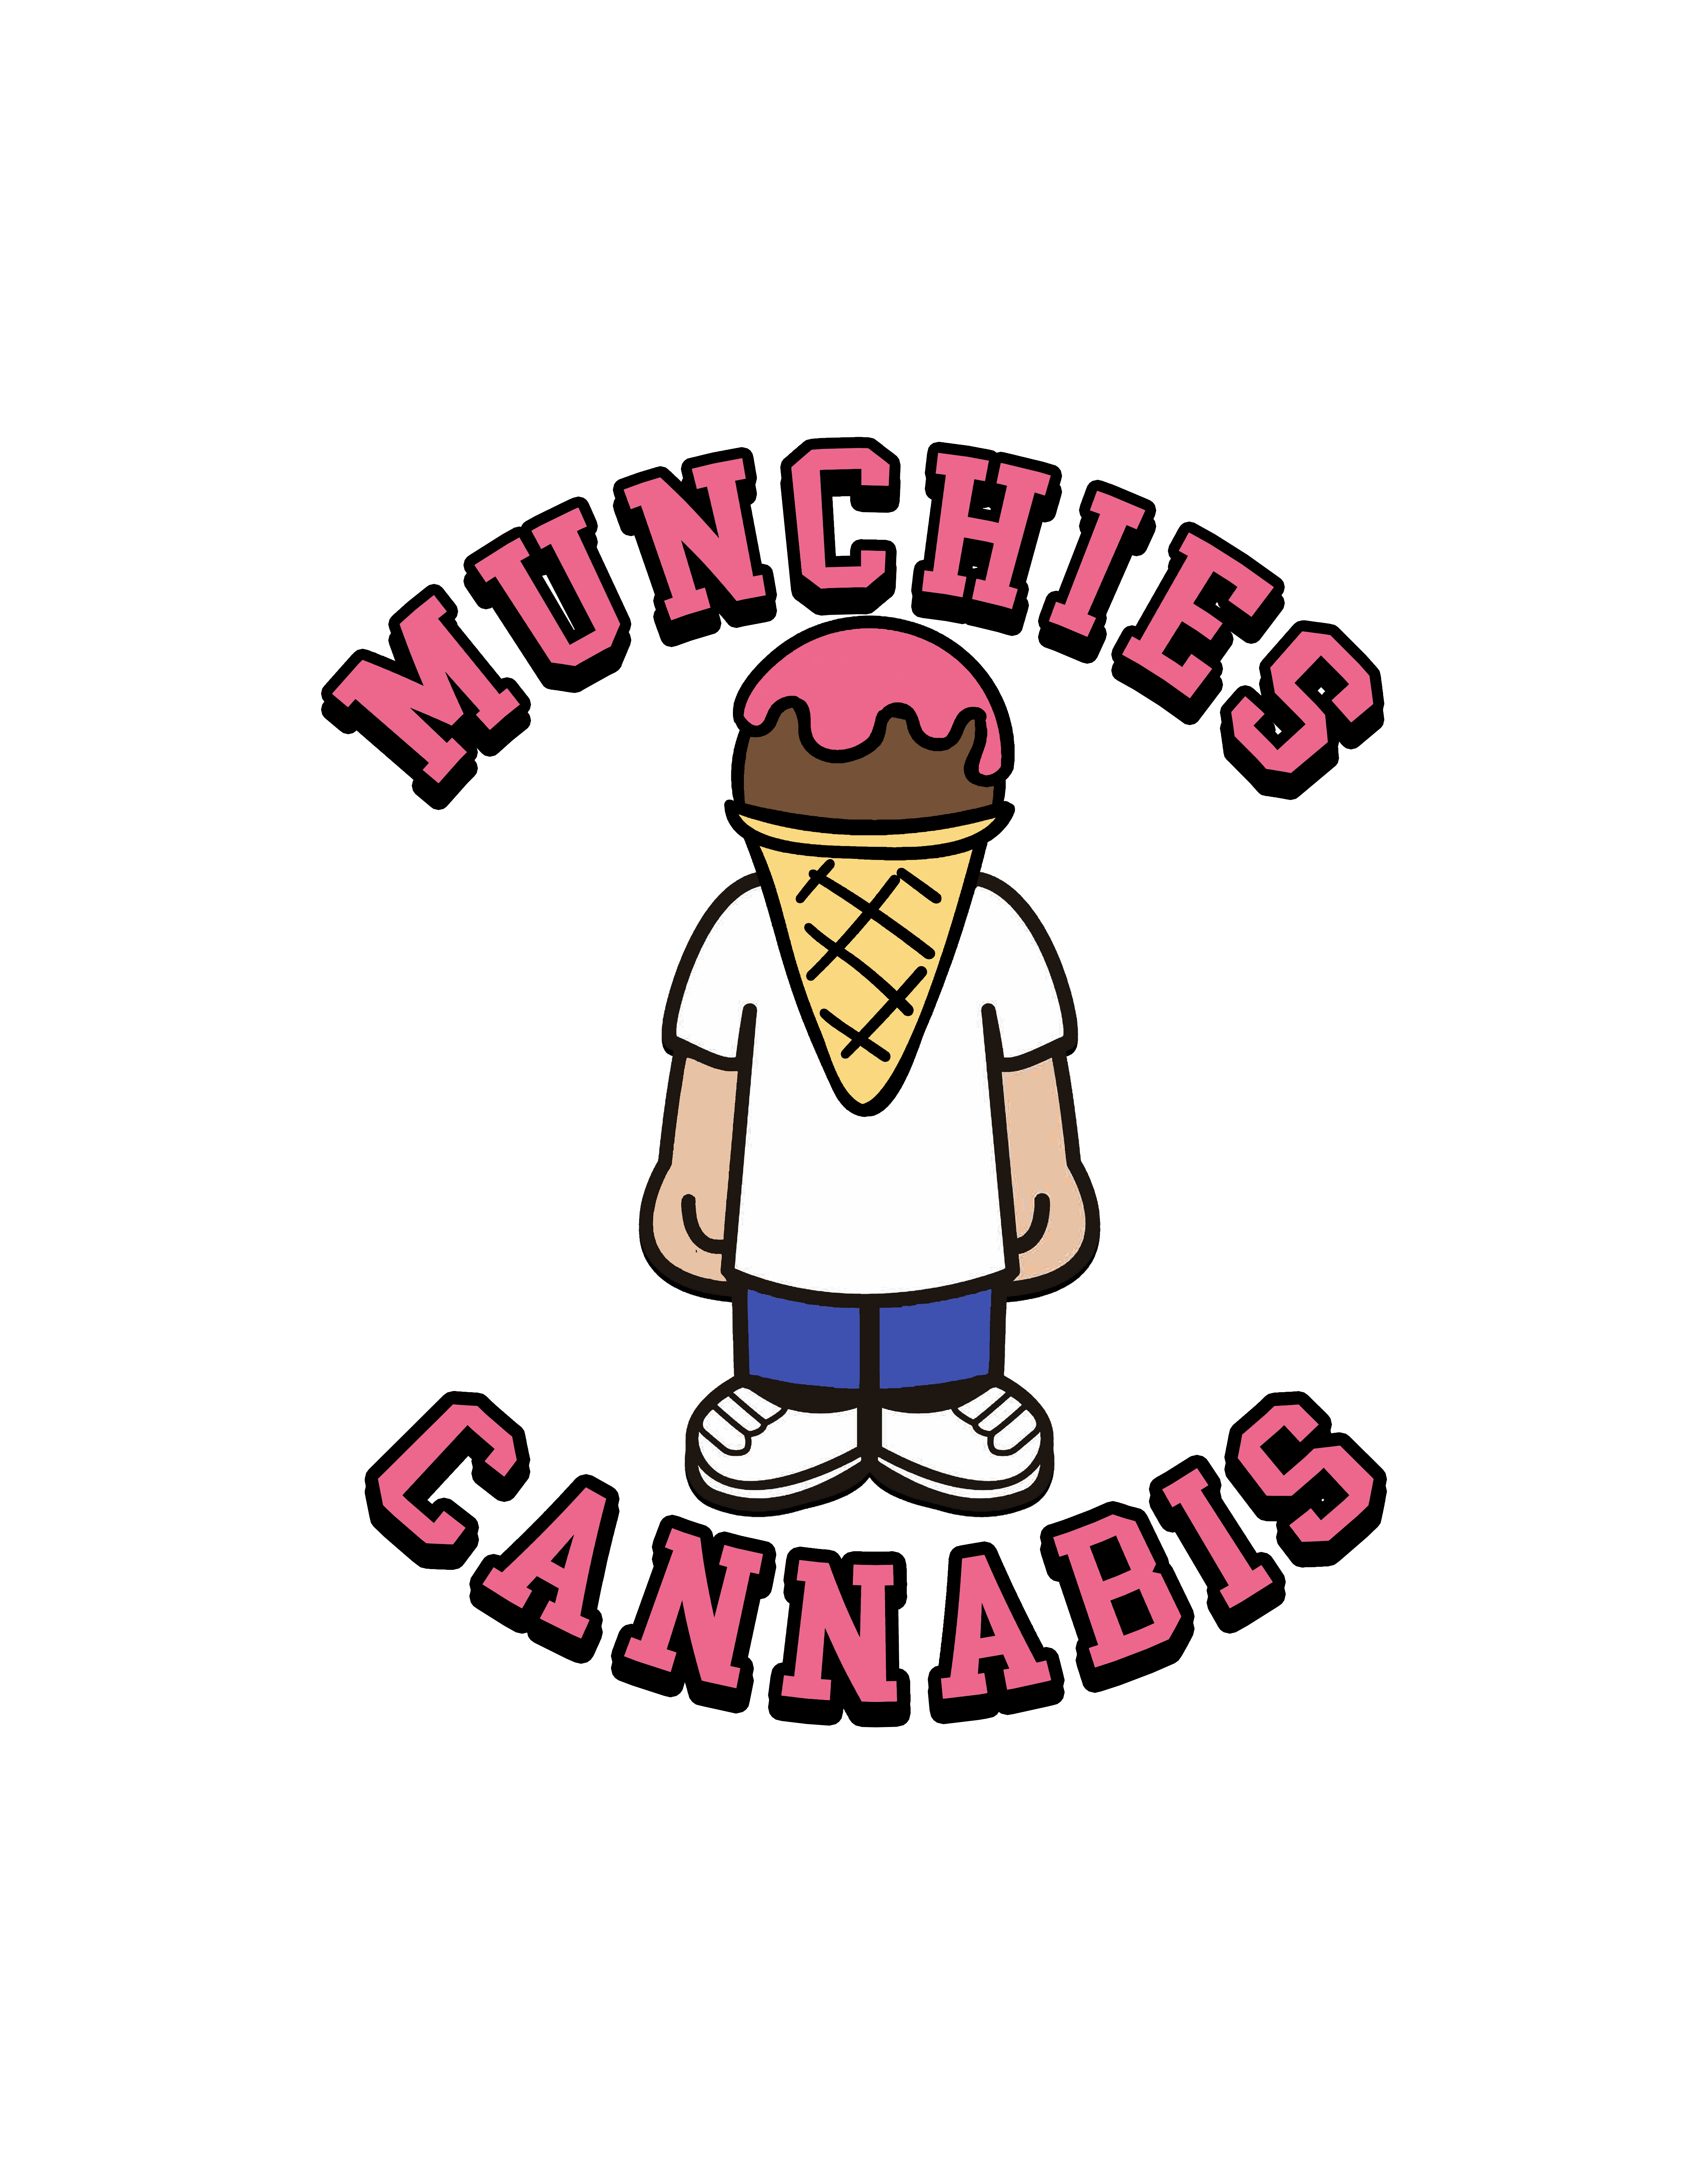 Munchies Cannabis Beechwood - Vanier - Ottawa-logo